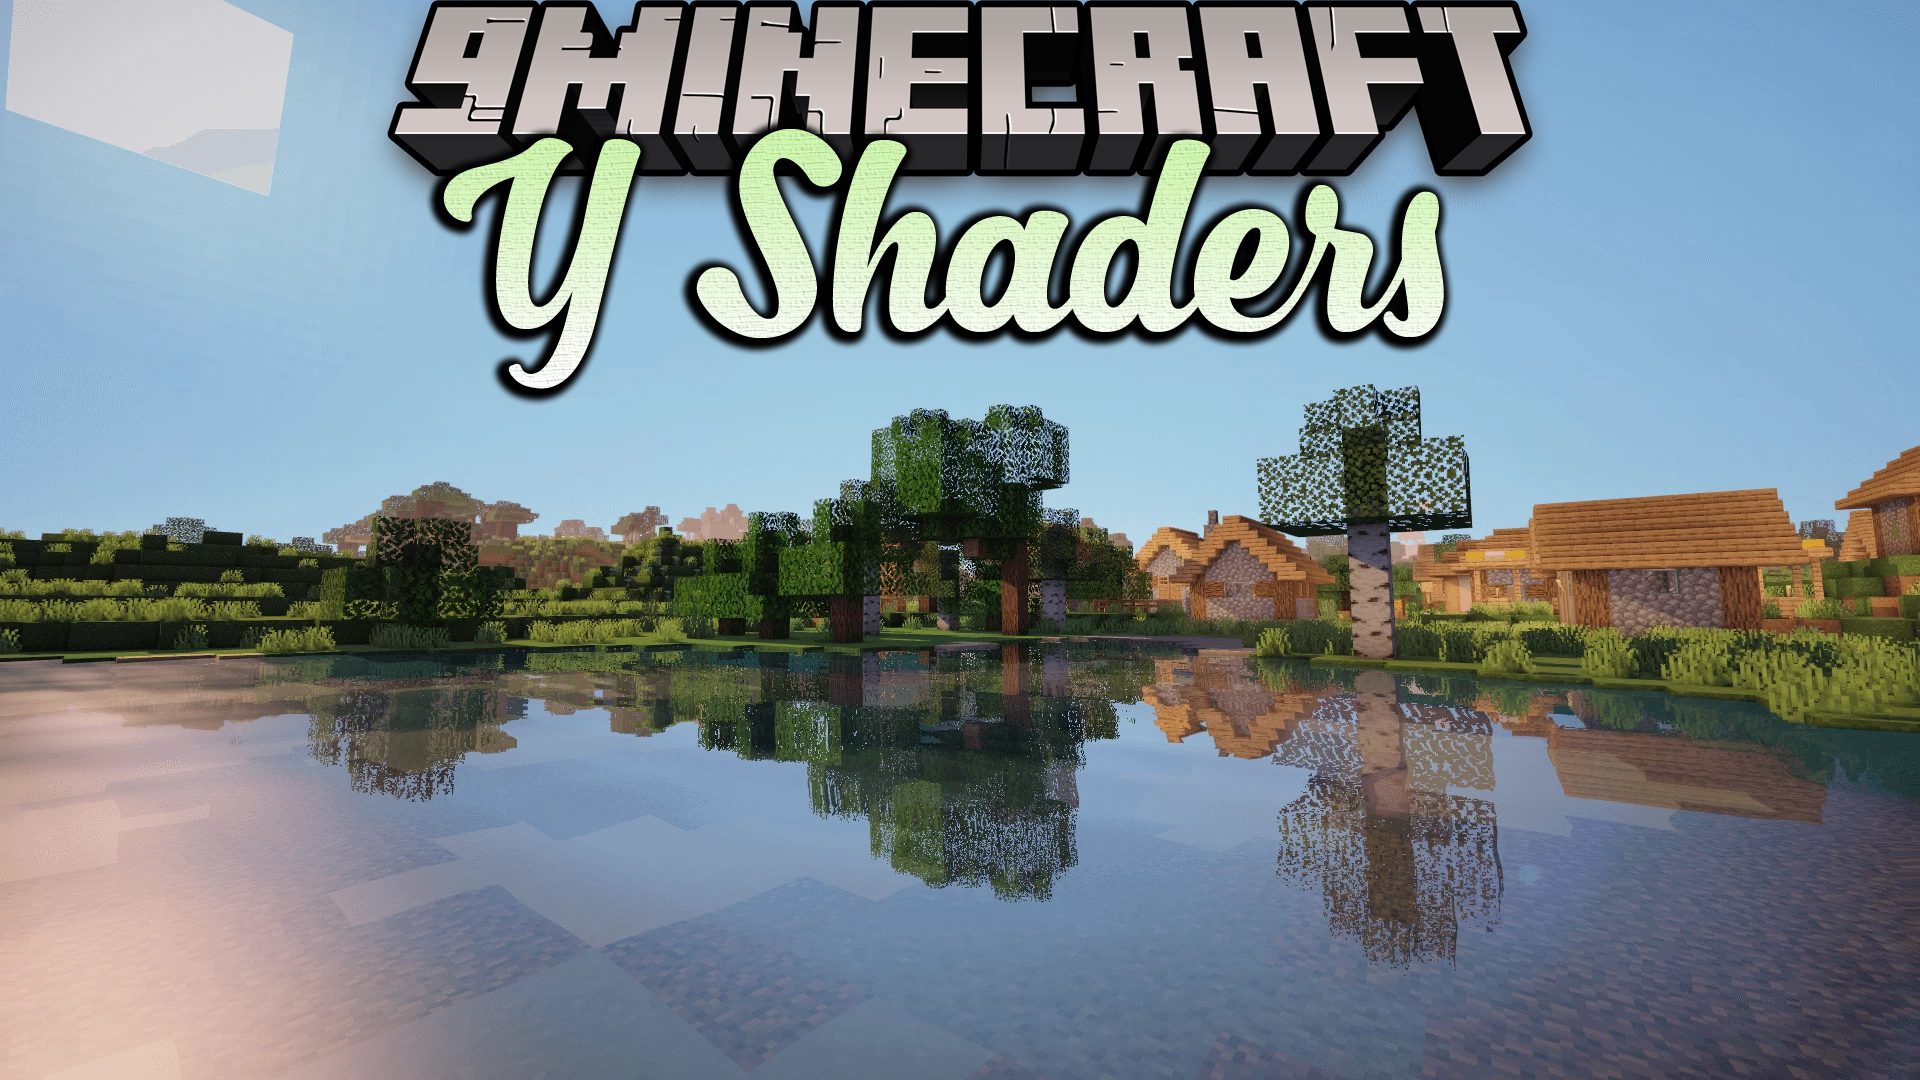 Os 12 melhores shaders de Minecraft para PC e como instalar! (2023